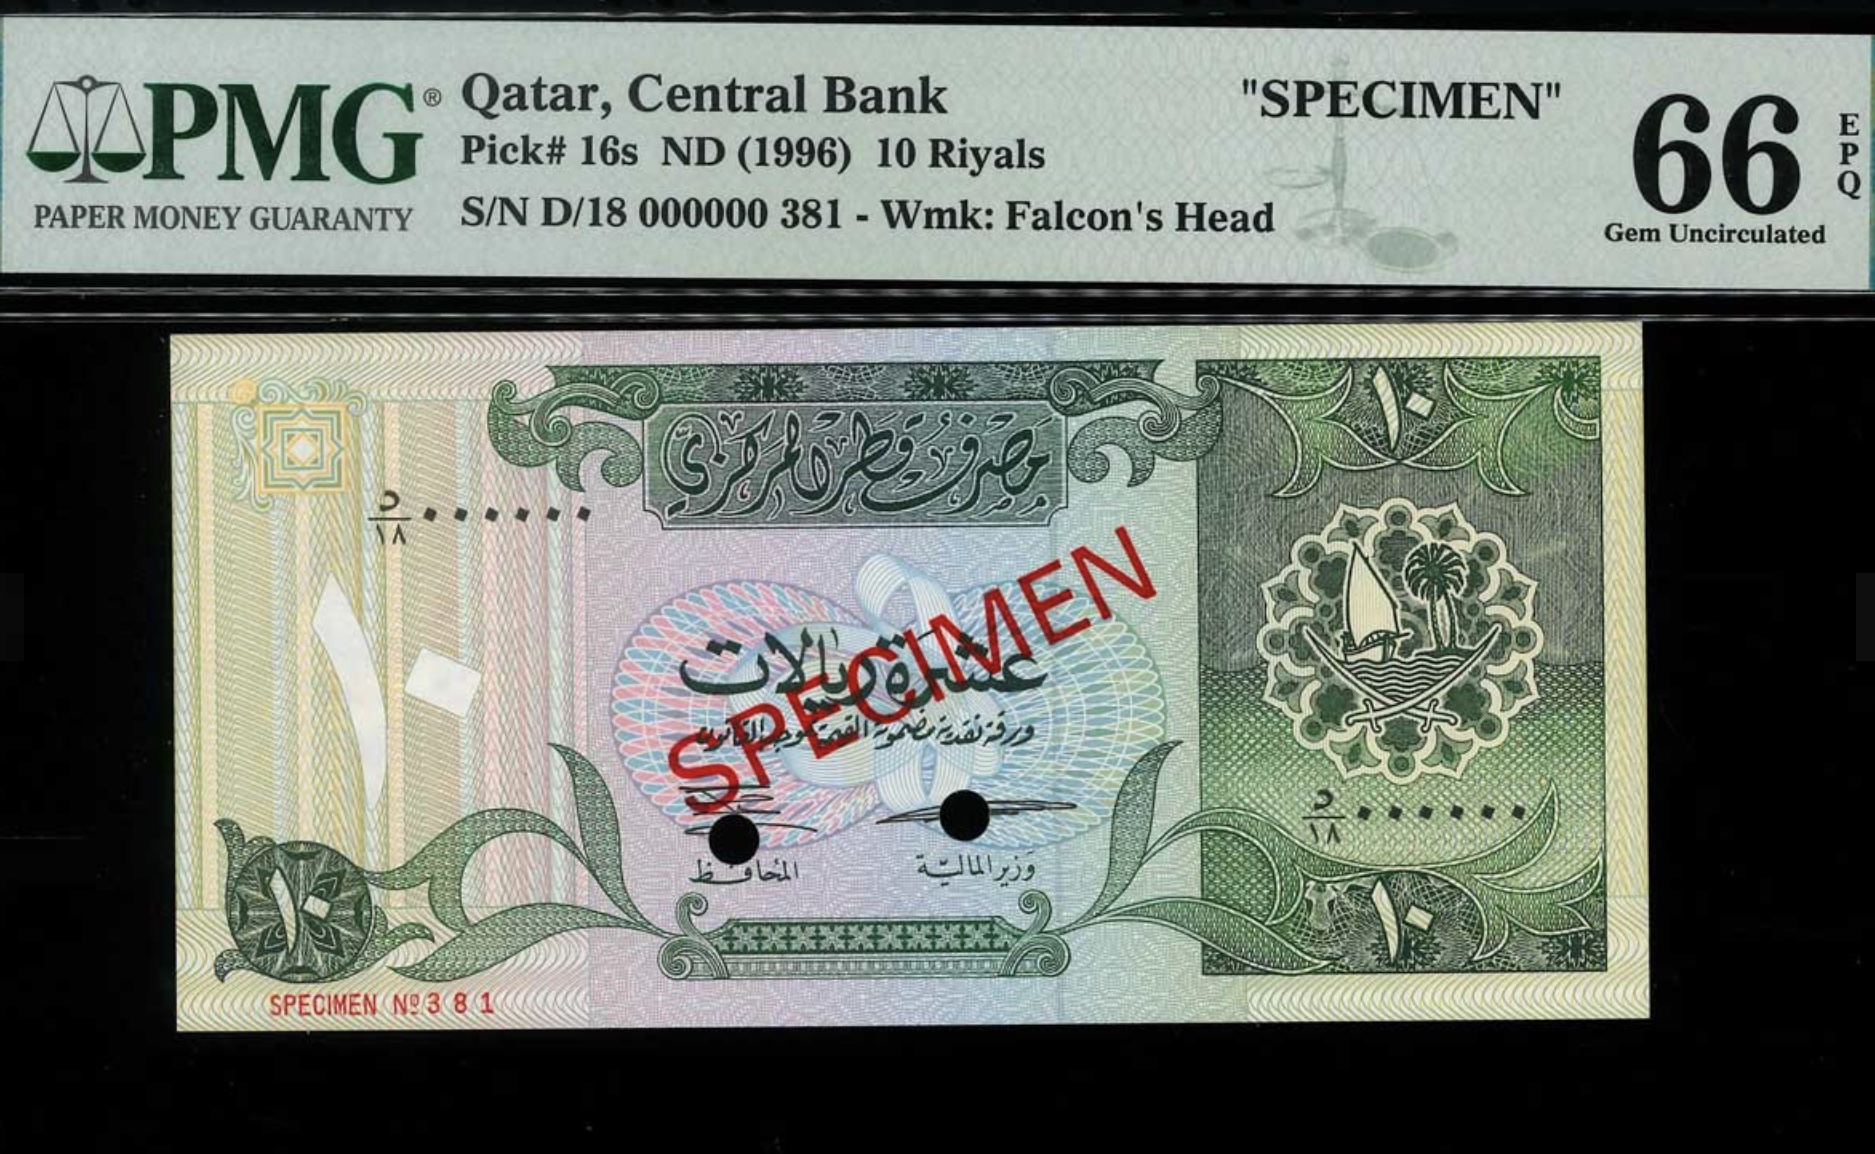 996 Qatar 10 Riyals Specimen Banknote Pick 16s S/N D/18 000000 381 PMG 66 UNC